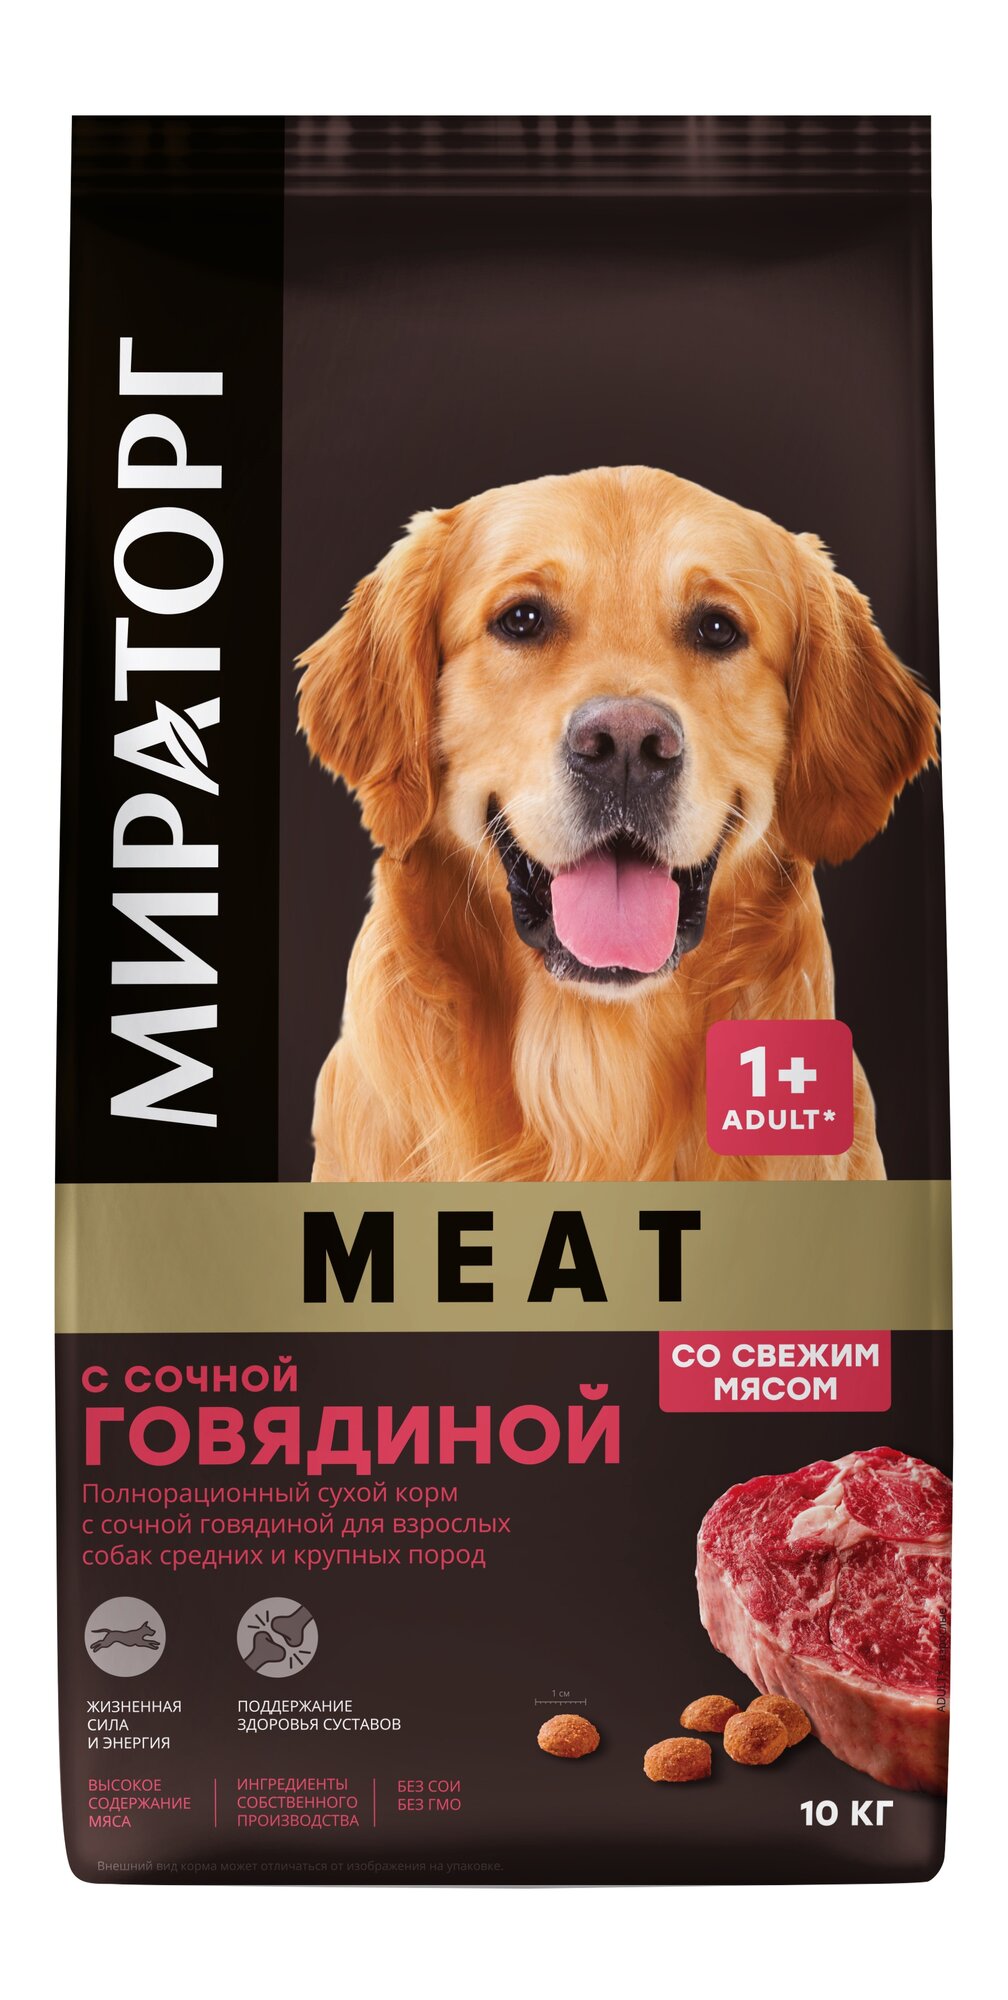 Сухой корм мираторг MEAT для взрослых собак средних и крупных пород с сочной говядиной (10 кг)